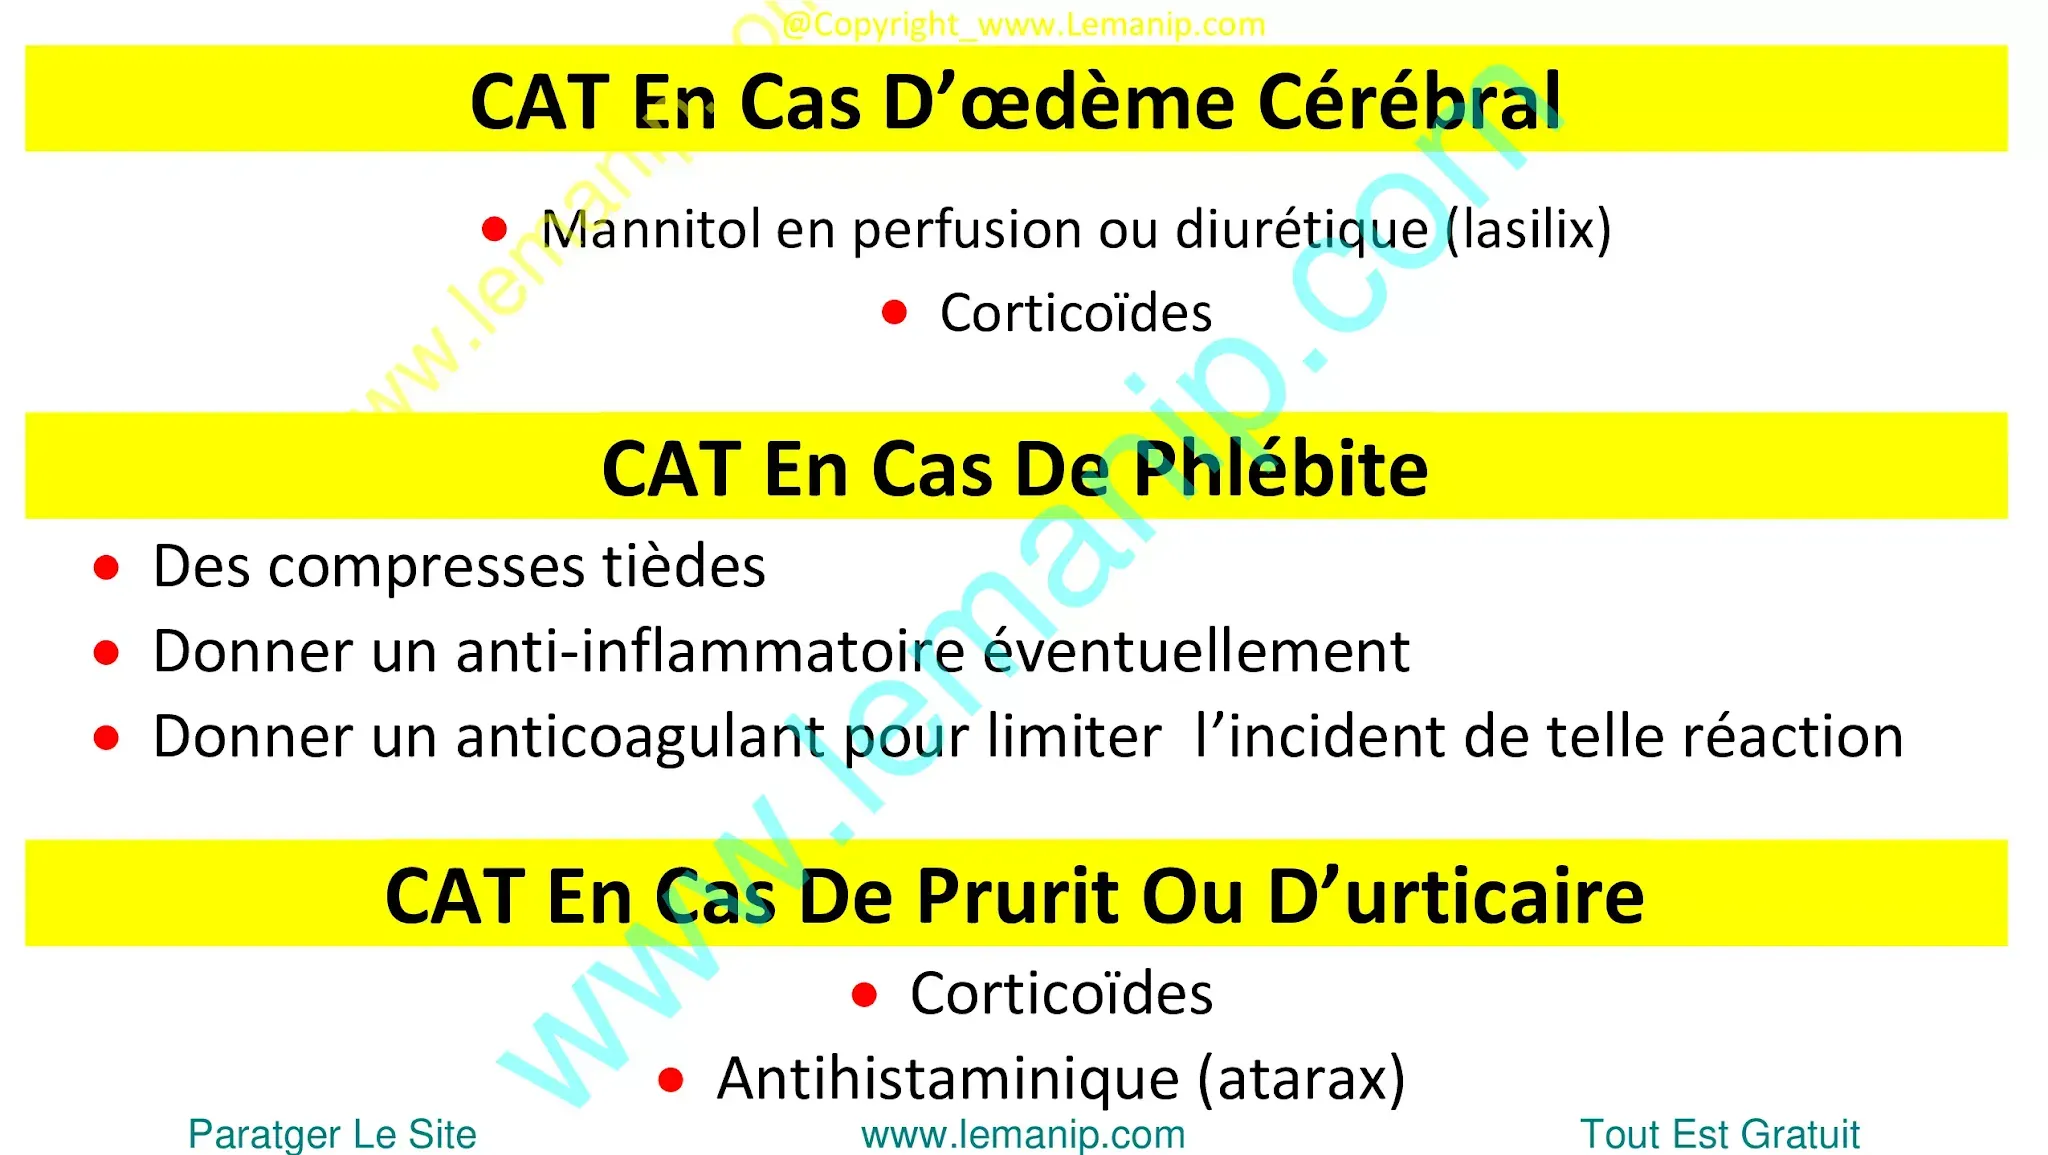 CAT En Cas D’œdème Cérébral, Phlébite et Prurit Ou D’urticaire